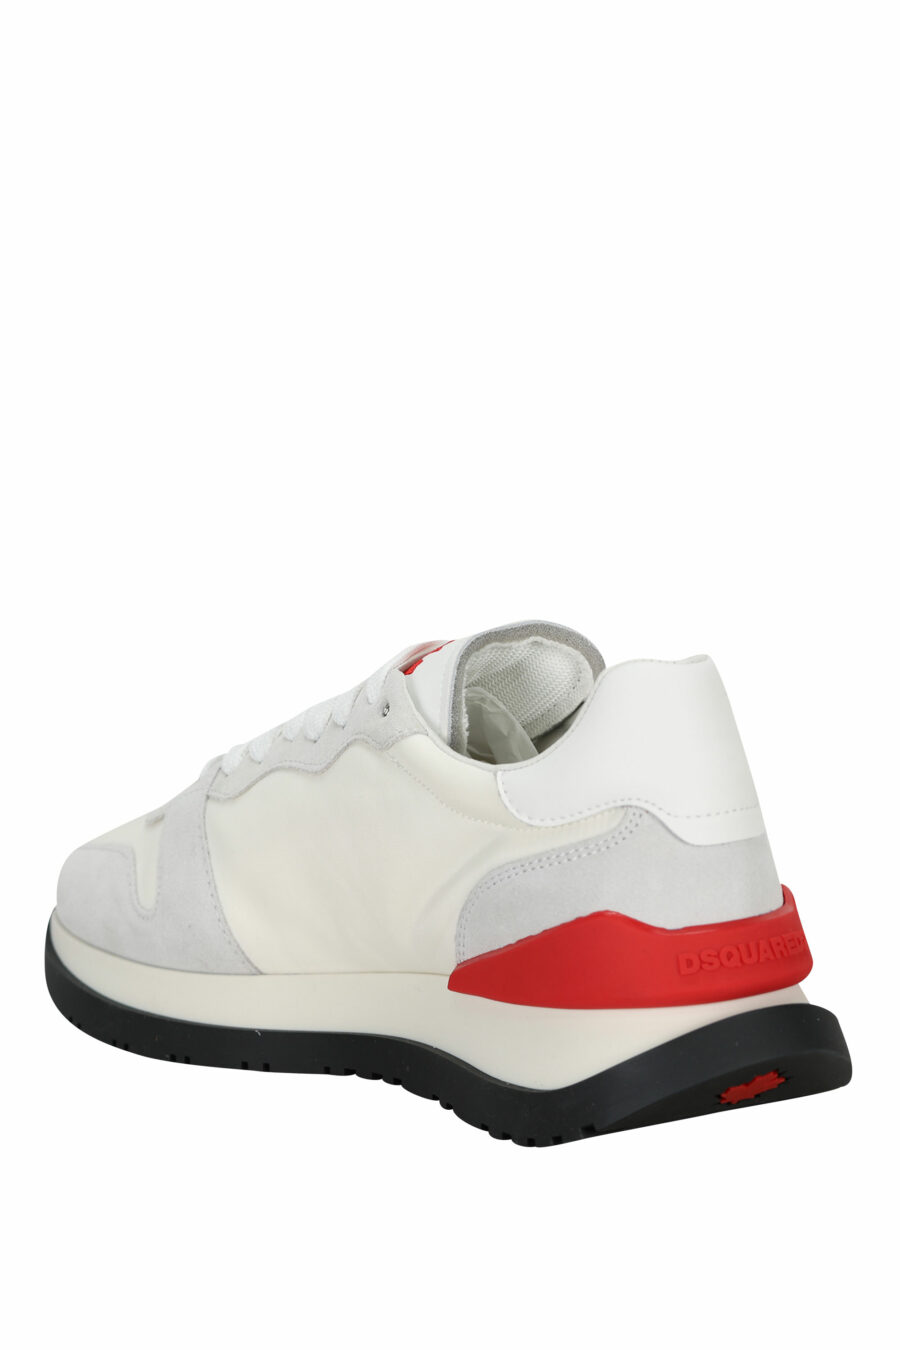 Baskets blanches mixtes avec logo rouge et mini "icon" - 8055777303870 3